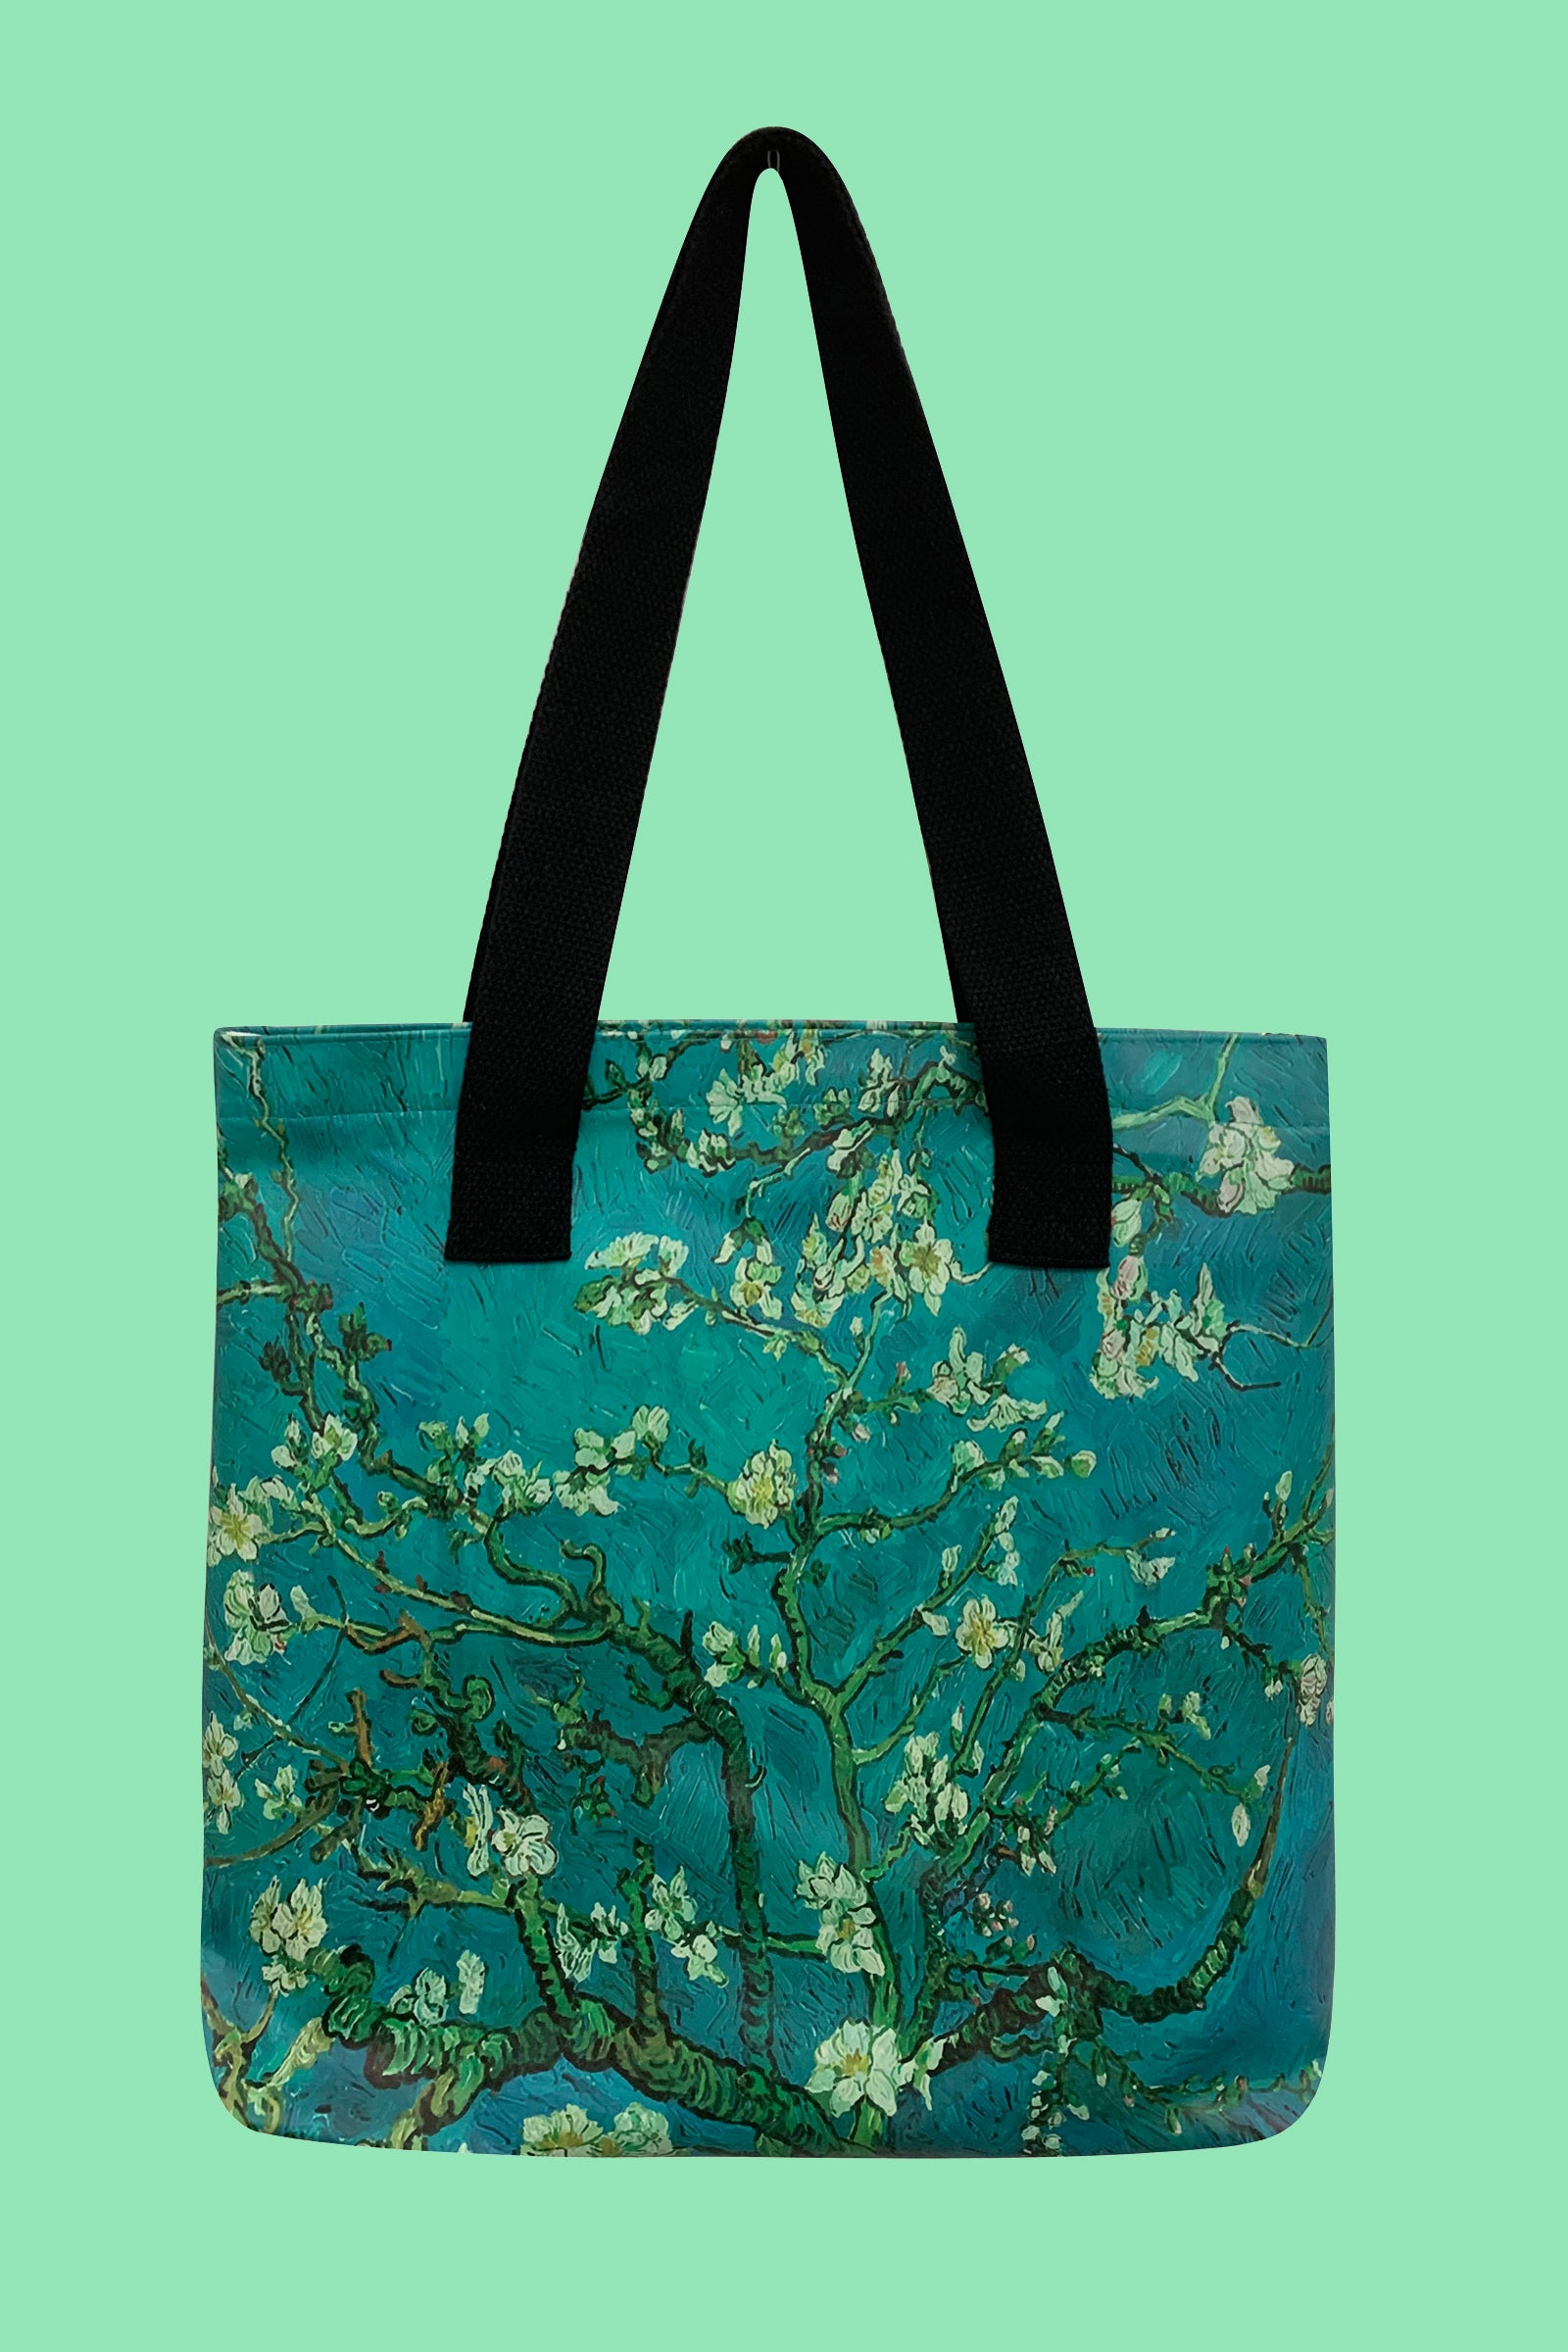 Crossbody Shoulder Bag Handbag Purse Van Gogh Designs Signare Tapestry |  eBay